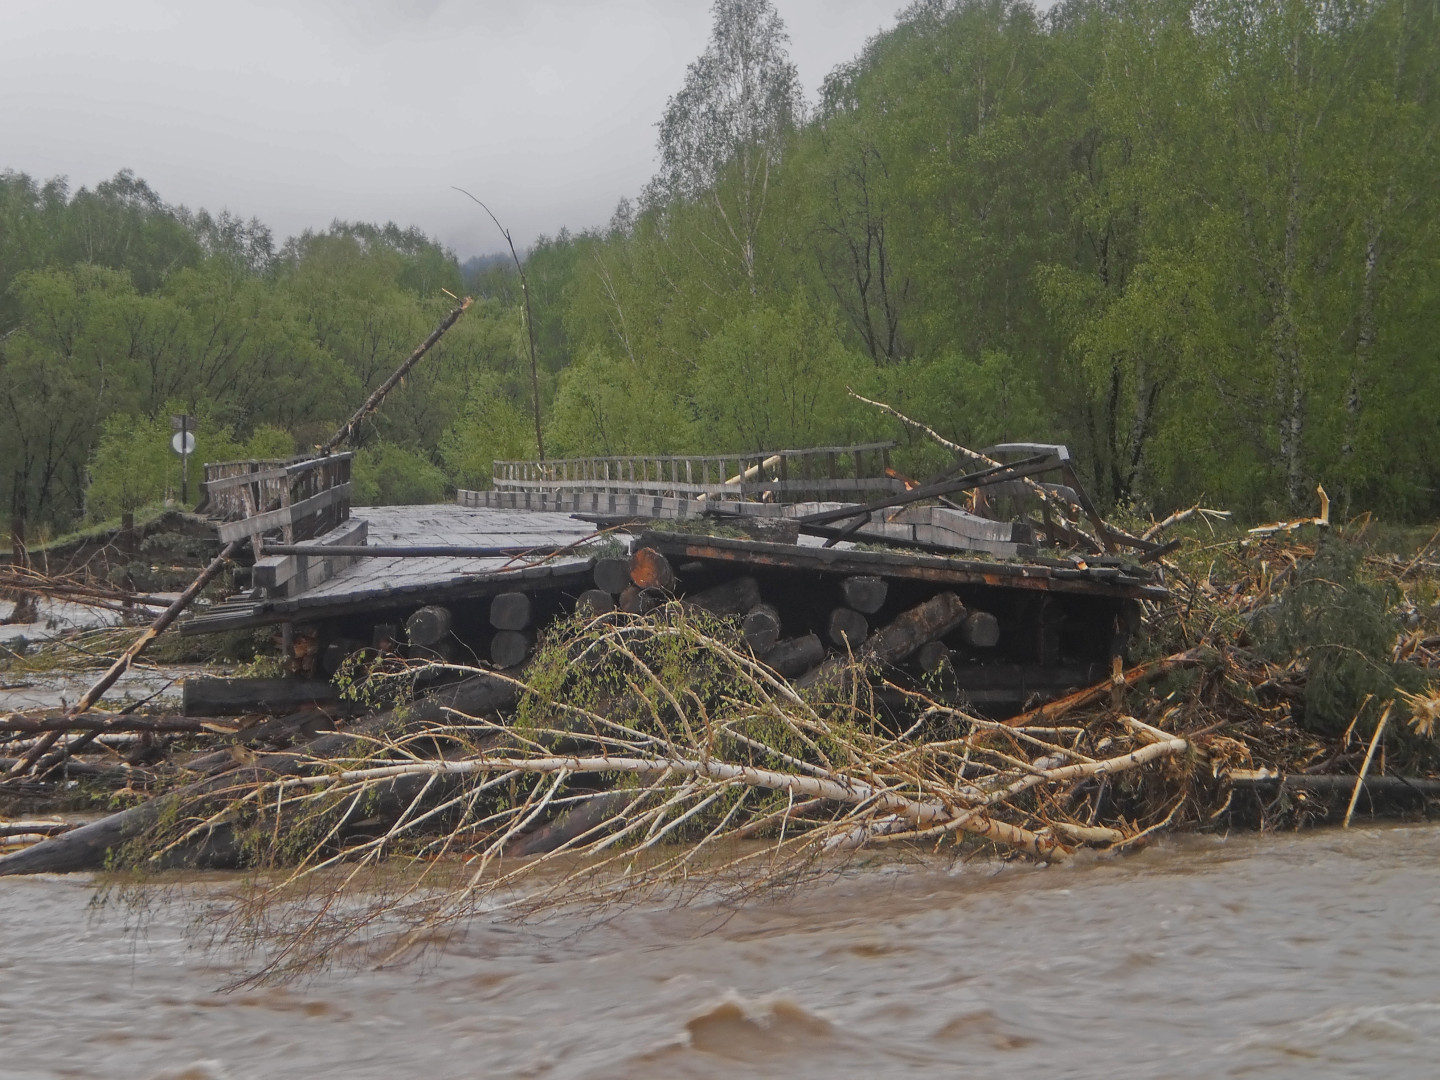 Частично разрушенный мост близ села Коргон вследствие наводнения в 2014 г. Фото предоставлено администрацией Усть-Канского района Республики Алтай